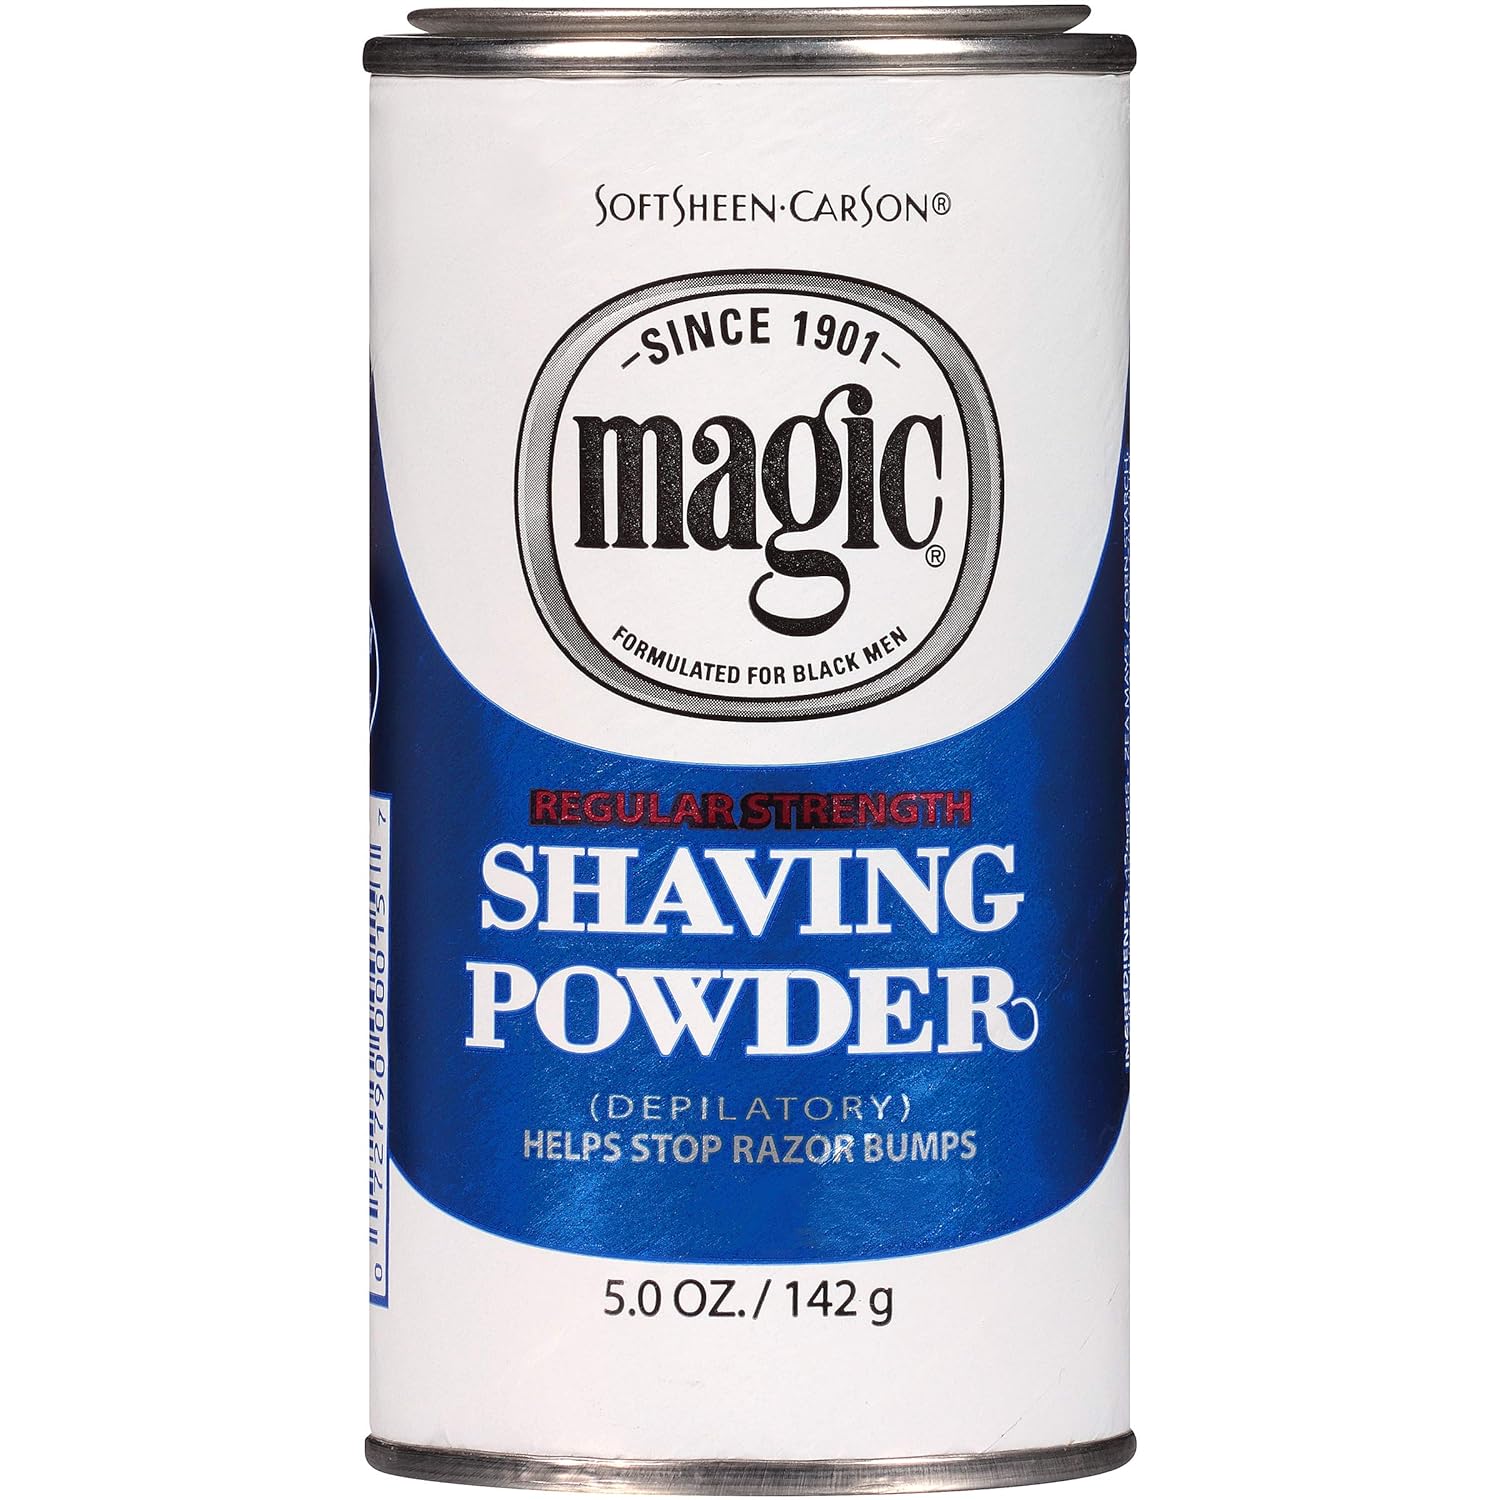 SoftSheen-Carson Magic Razorless Shaving for Men, Regular Strength Shaving Powder, for Normal Beards, formulated for Black Men, Depilatory, Helps Stop Razor Bumps, 5 oz